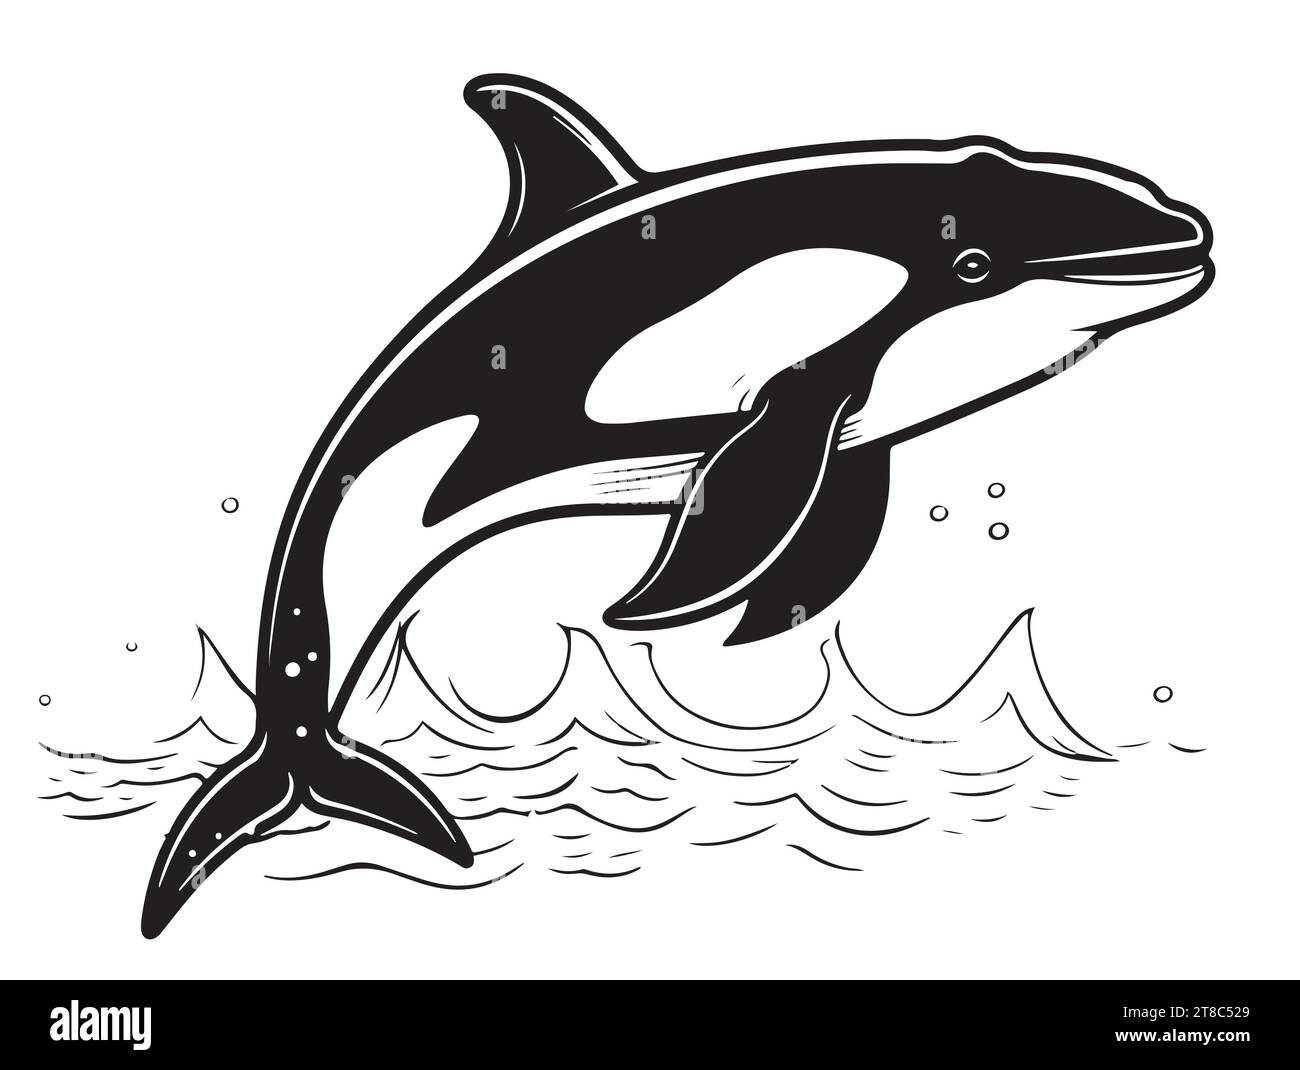 Croquis isolé d'un animal marin d'épaulards. Illustration vectorielle Grampus. Orca ou baleine à dents, prédateur marin sautant hors de l'eau avec la queue incurvée. Pour logo, carte de voeux et conception. Illustration de Vecteur